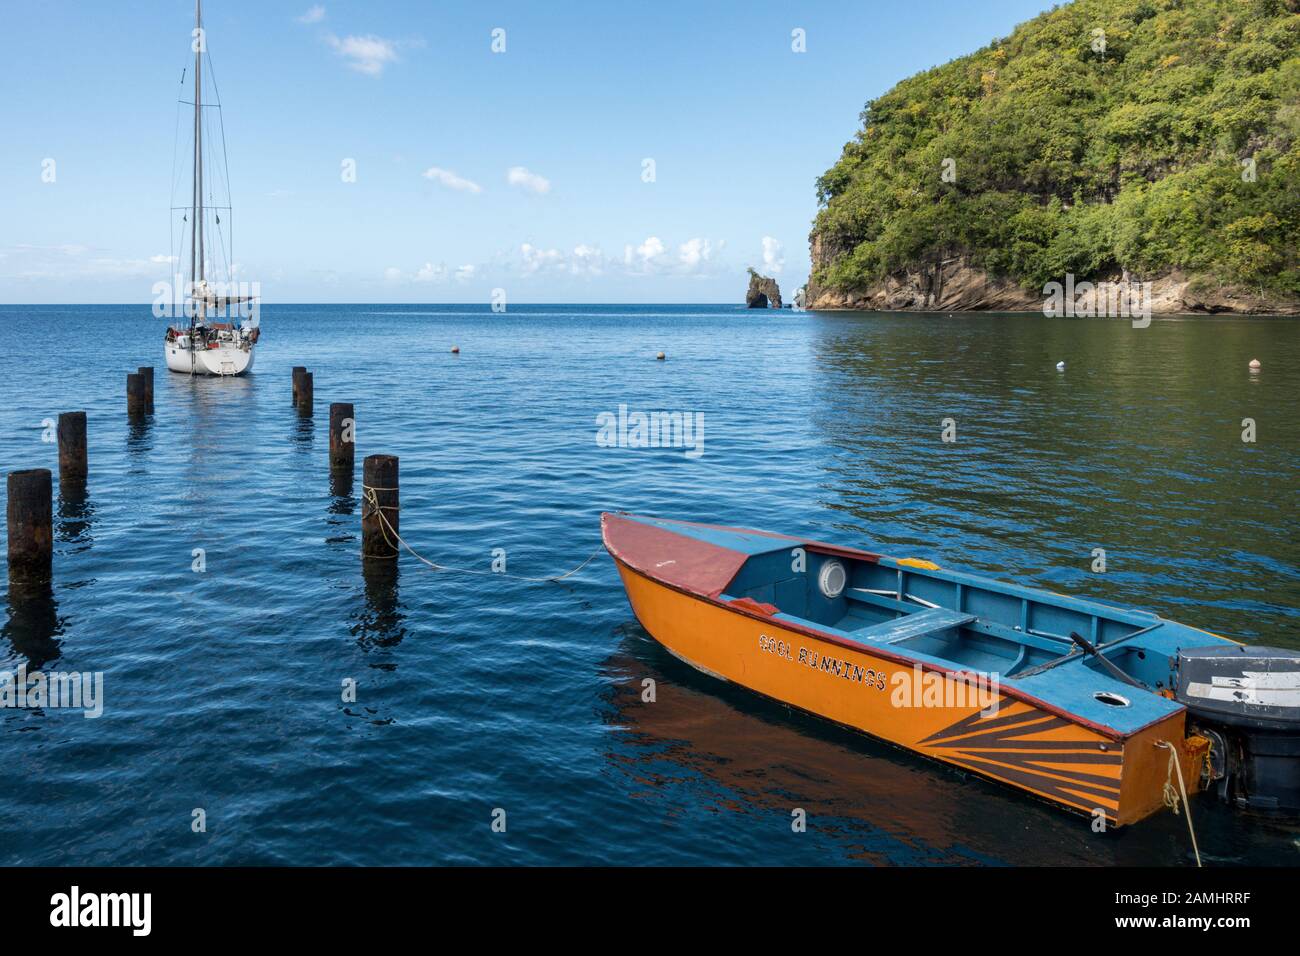 Bahía Wallilabou, conjunto de Piratas del Caribe, San Vicente y las Granadinas, Islas de Barlovento, Caribe, Indias Occidentales Foto de stock